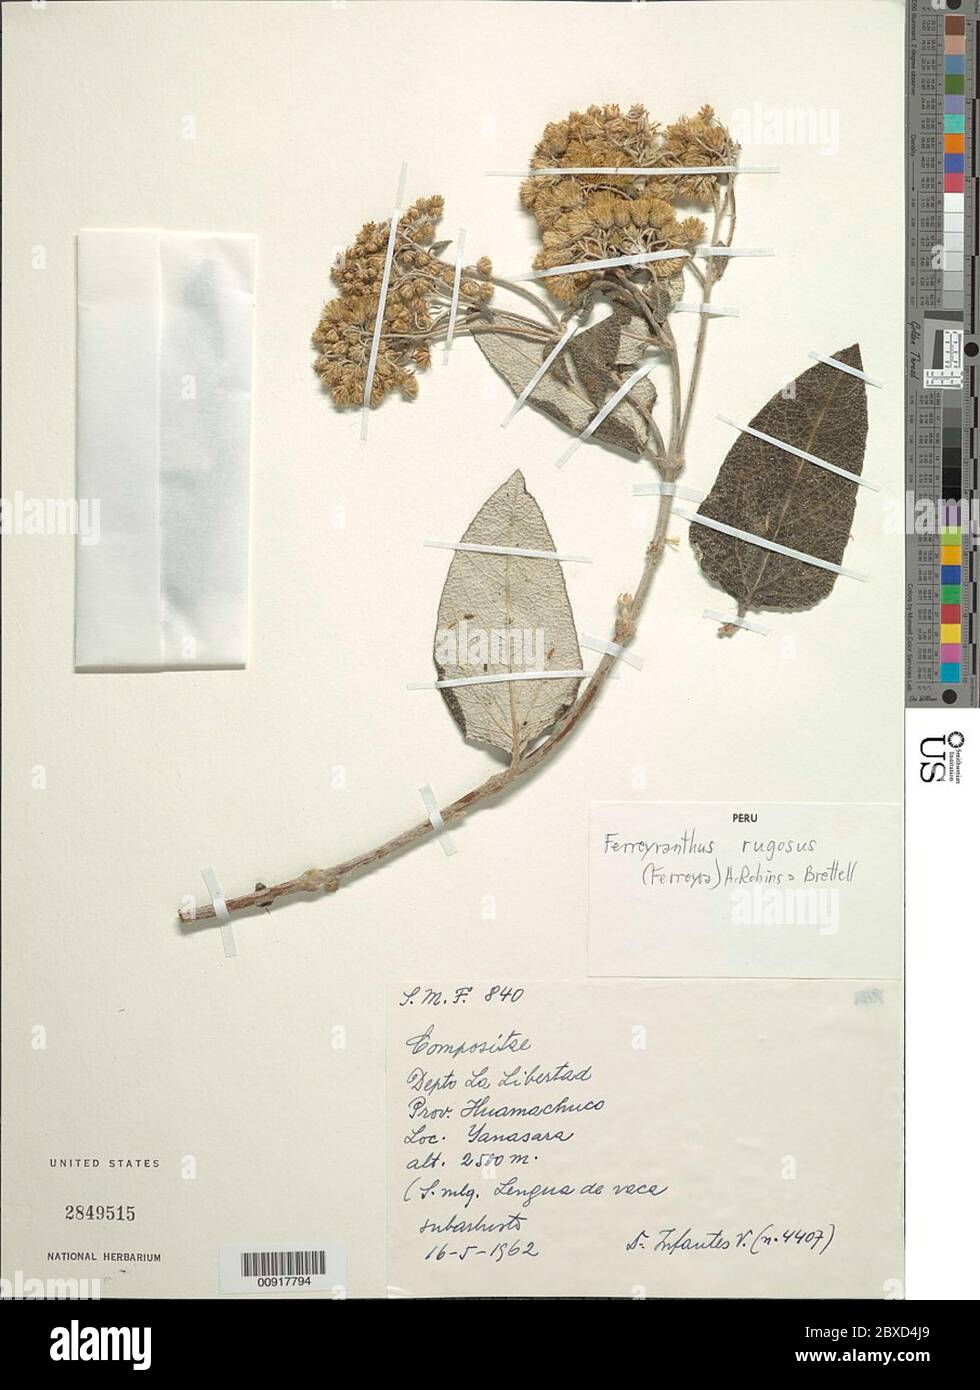 Ferreyranthus rugosus Ferreyra H Rob Brettell Ferreyranthus rugosus Ferreyra H Rob Brettell. Stock Photo